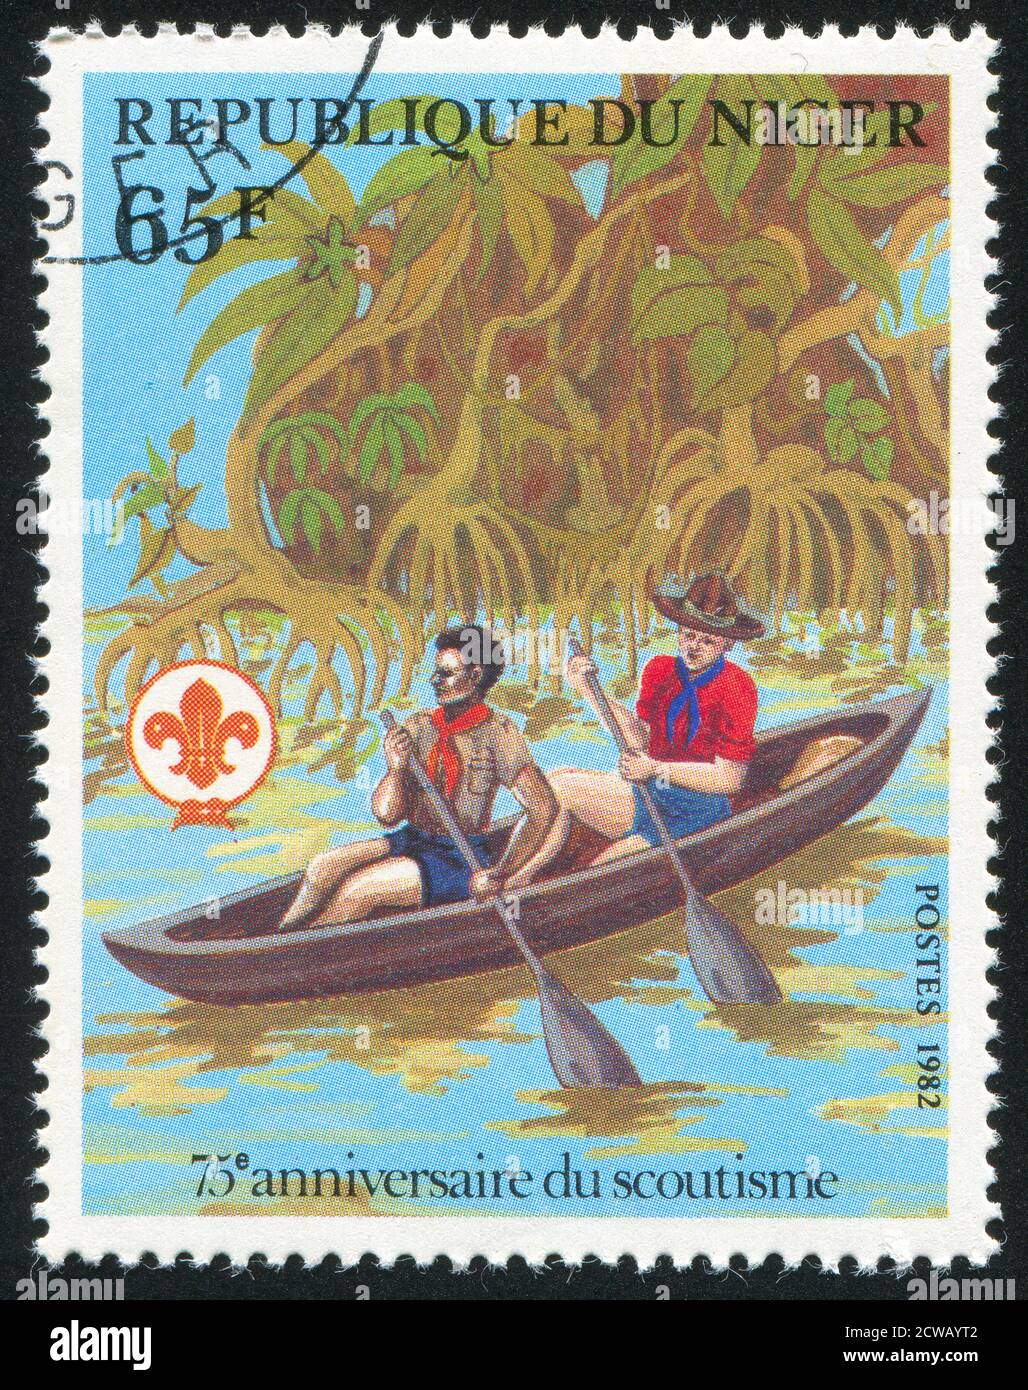 NIGER - UM 1982: Briefmarke gedruckt von Niger zeigt Kanusport, um 1982 Stockfoto